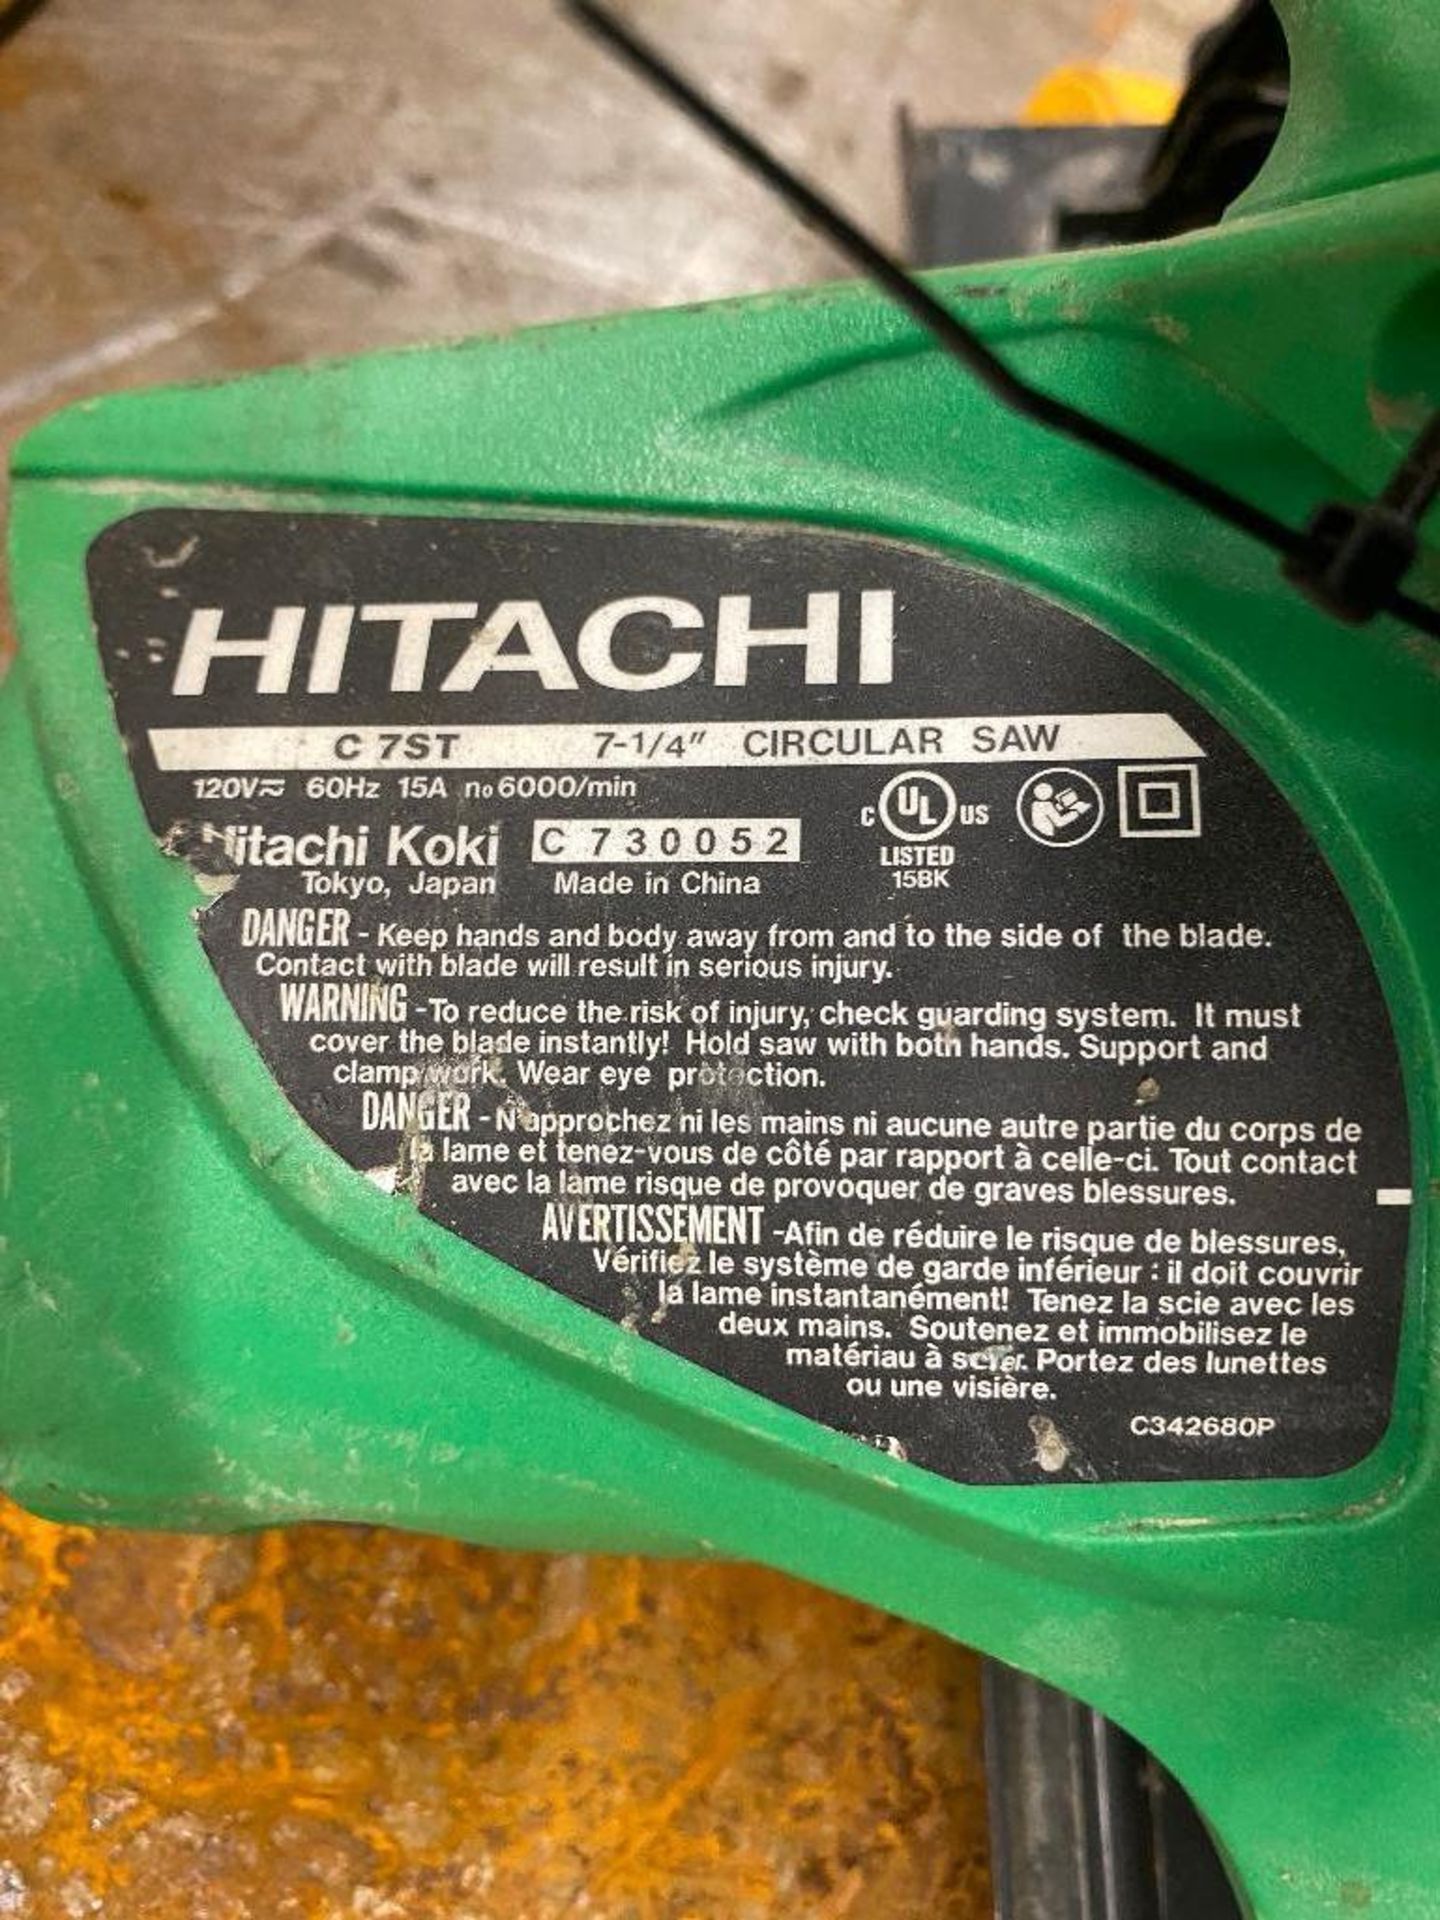 Hitachi C7ST 7 1/4" Circular Saw. - Image 4 of 4